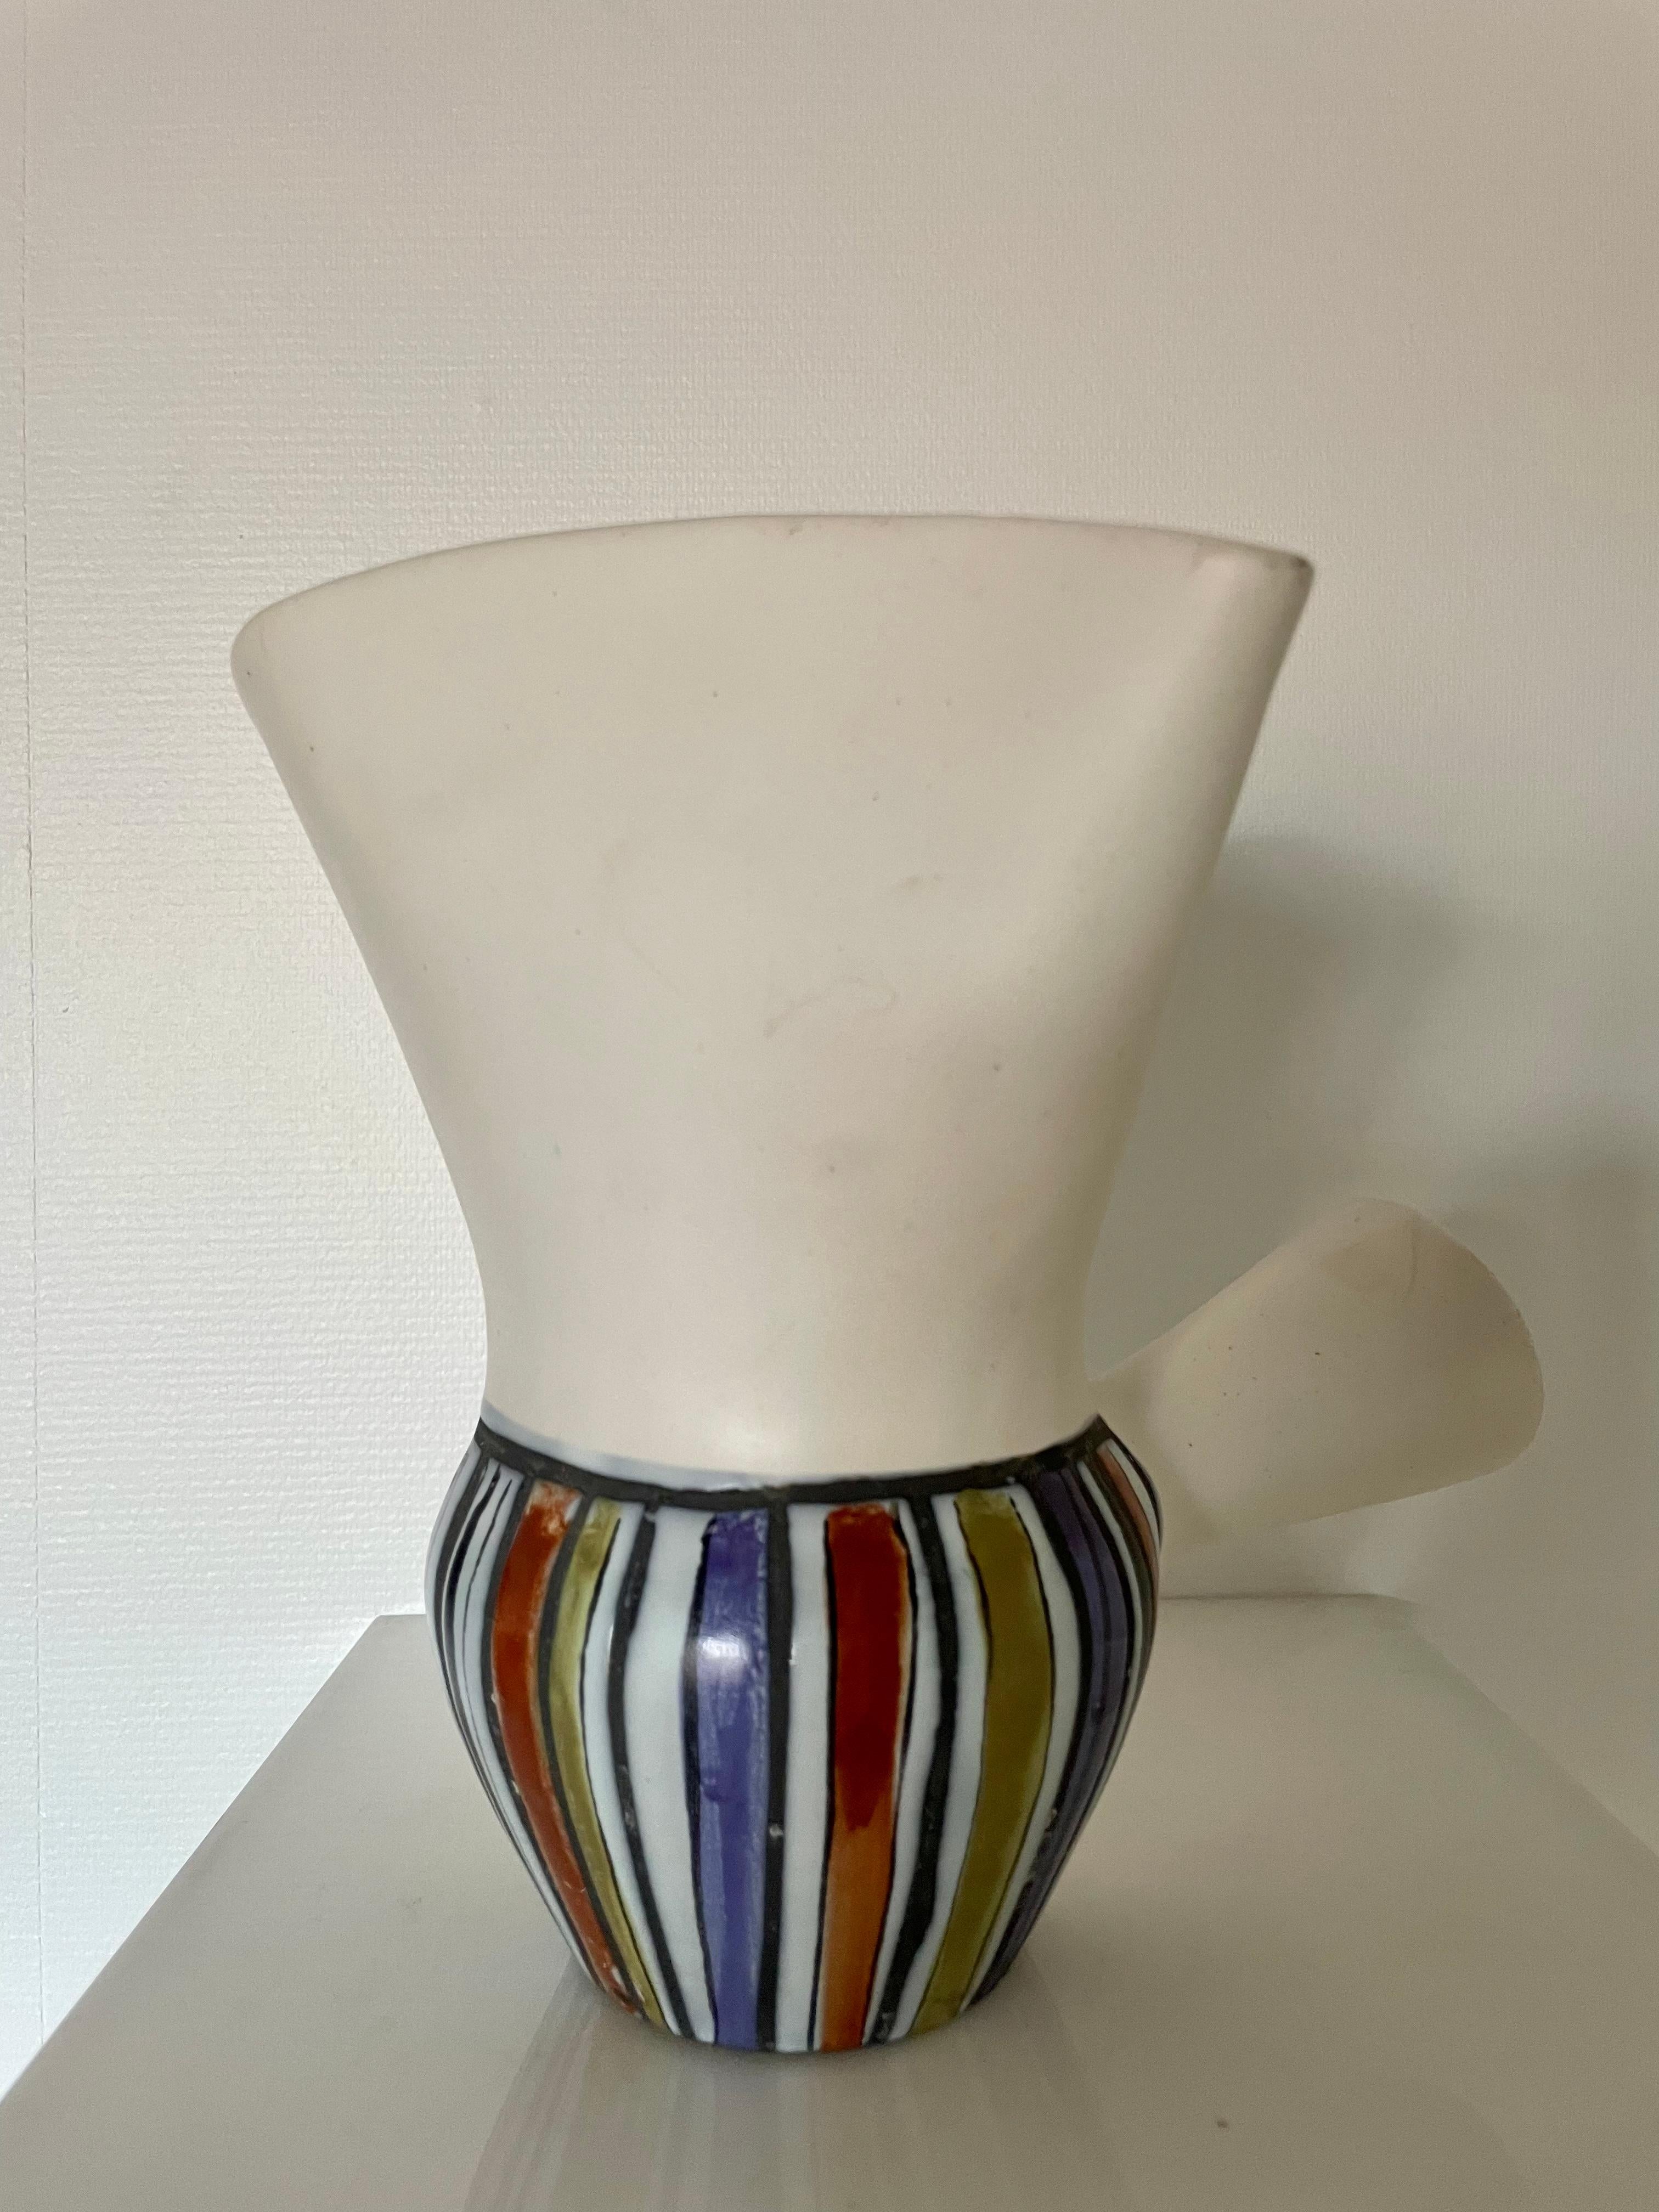 Ceramic Pitcher Vase by Roger Capron, 1950 For Sale 1